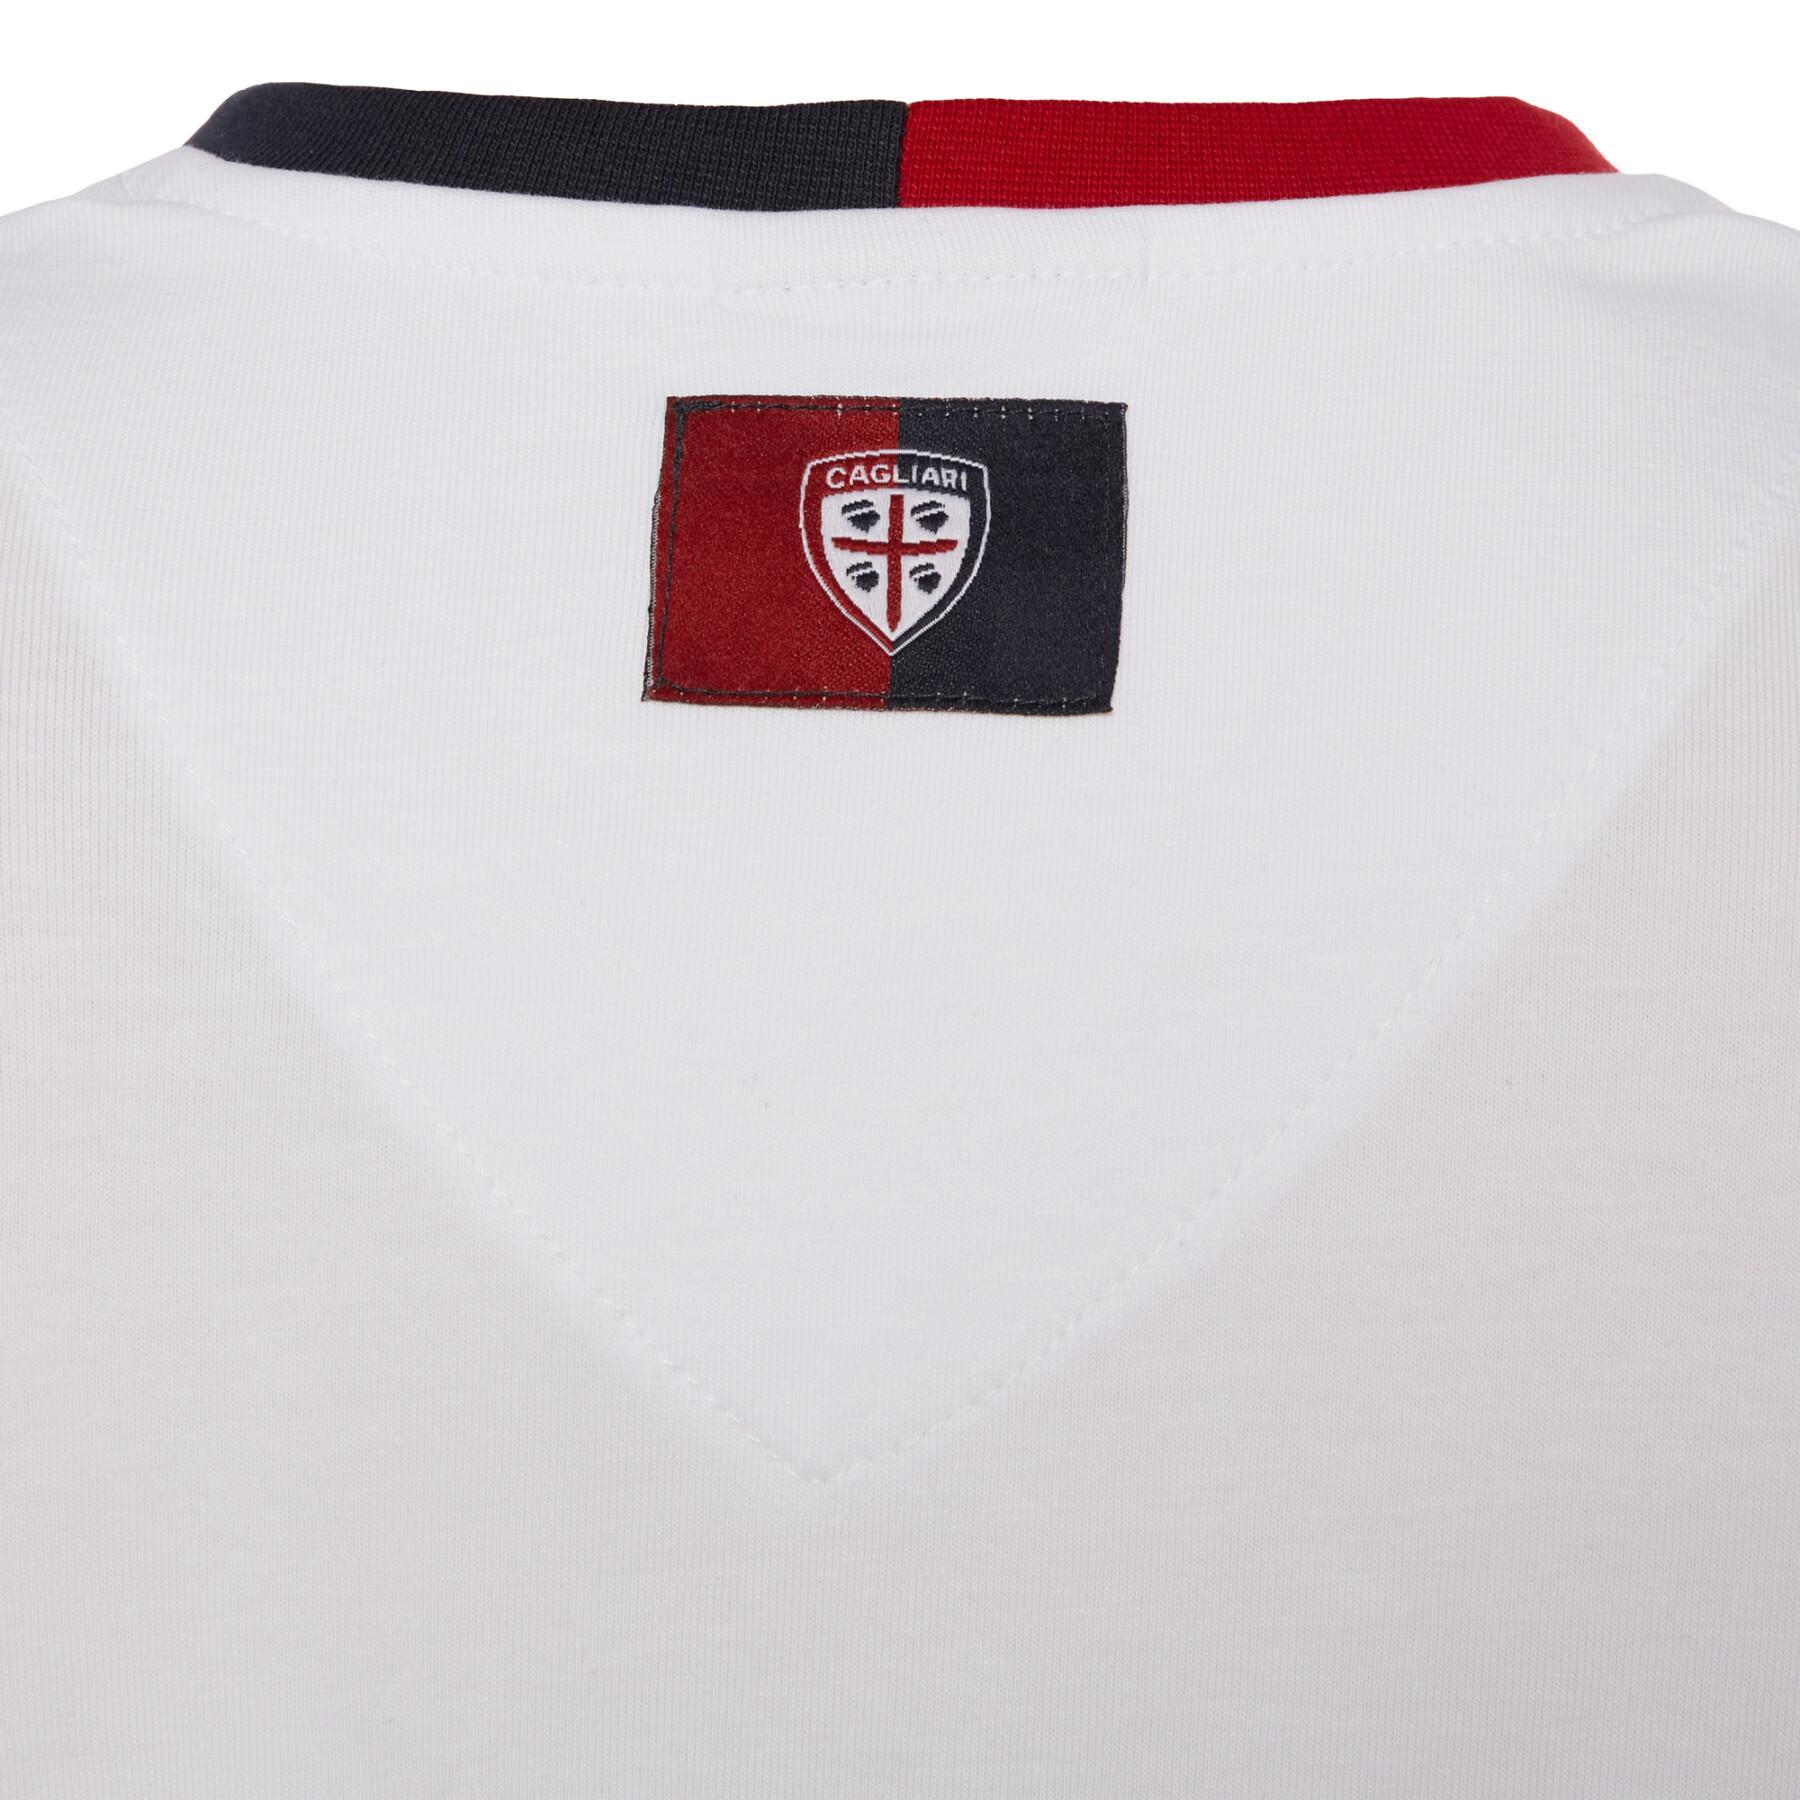 T-shirt femme Cagliari 2017-2018